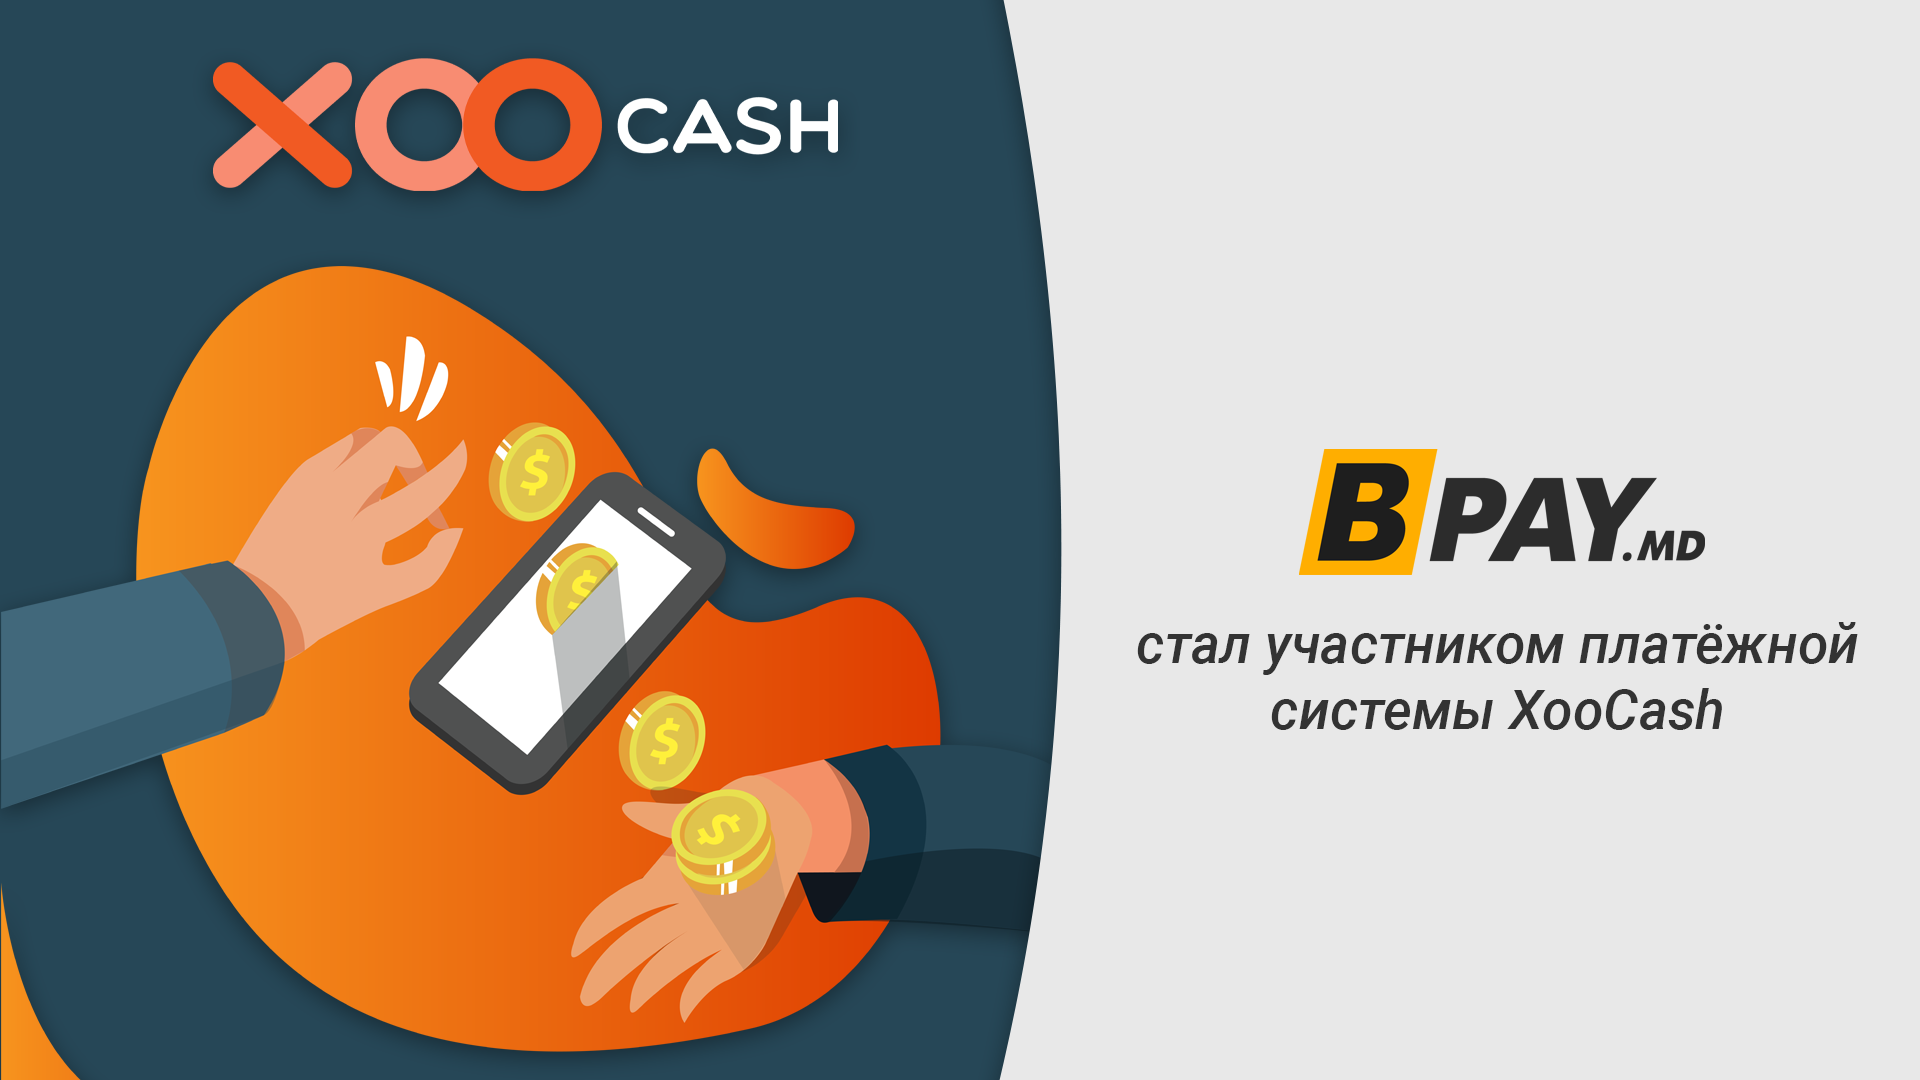 BPay стал участником платёжной системы XooCash